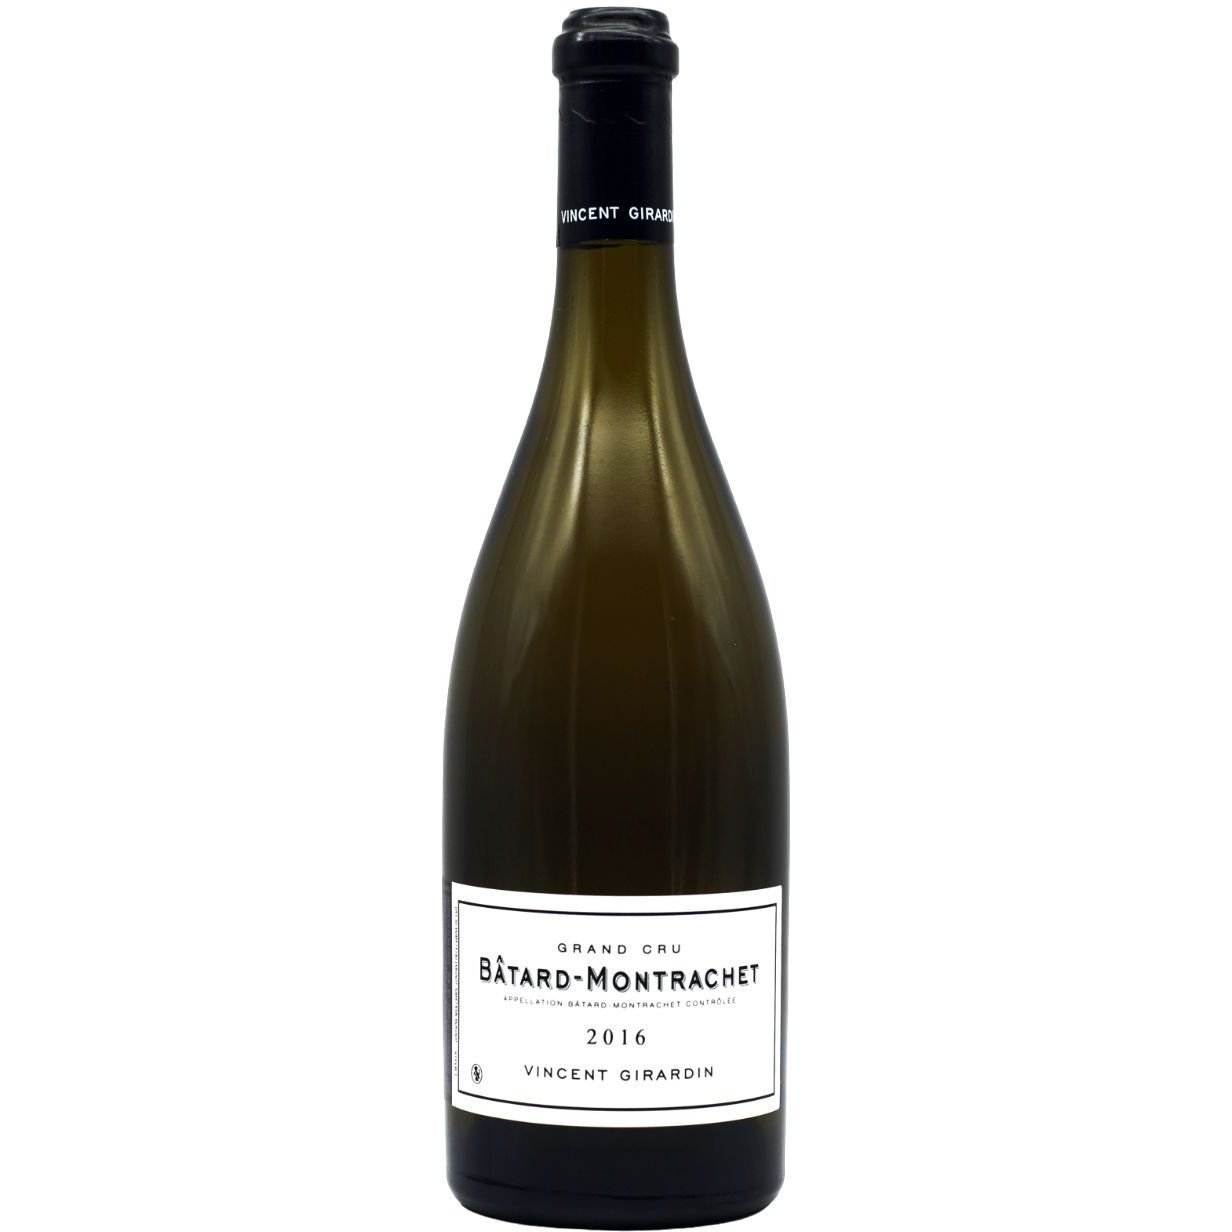 Вино Vincent Girardin Batard-Montrachet Grand Cru АОС 2016, белое, сухое, 0,75 л - фото 1